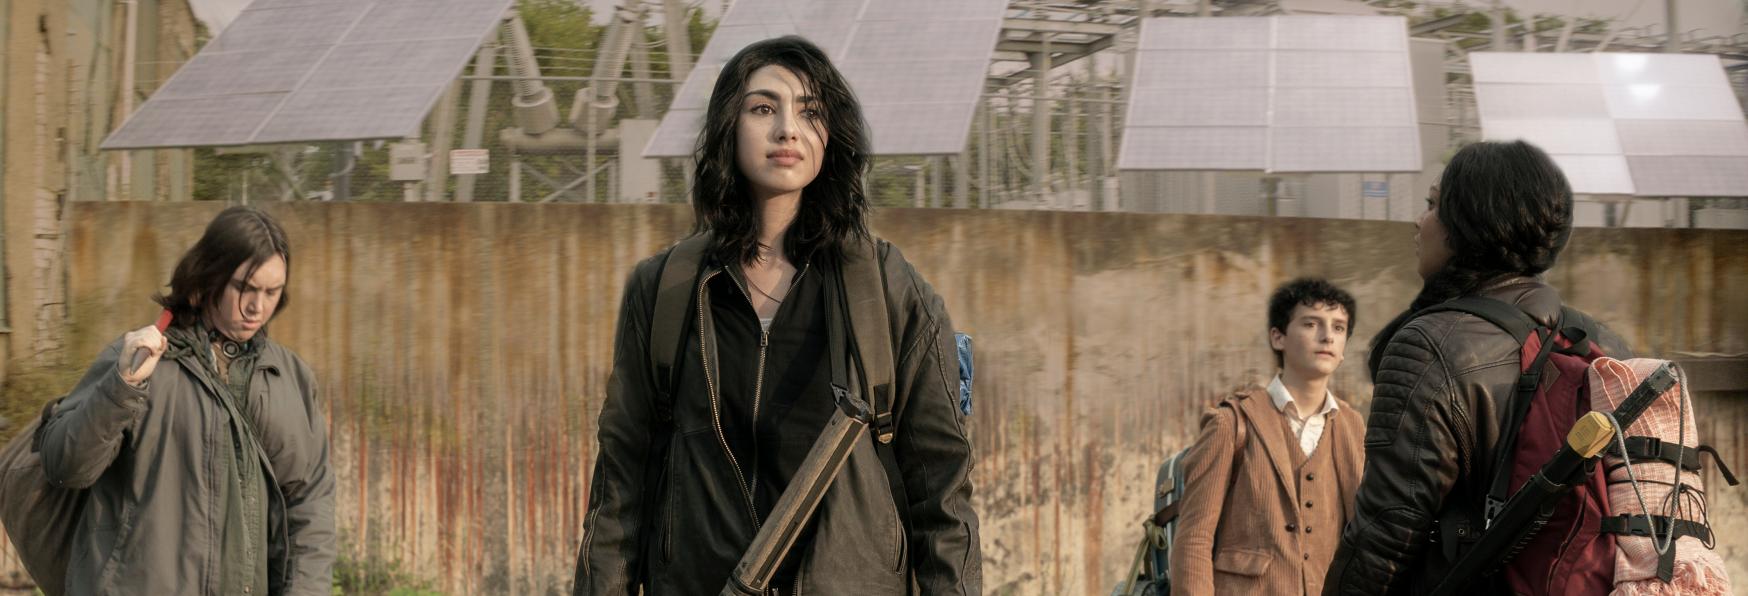 The Walking Dead: World Beyond - i membri del Cast raccontano le loro Esperienze con la Serie Madre